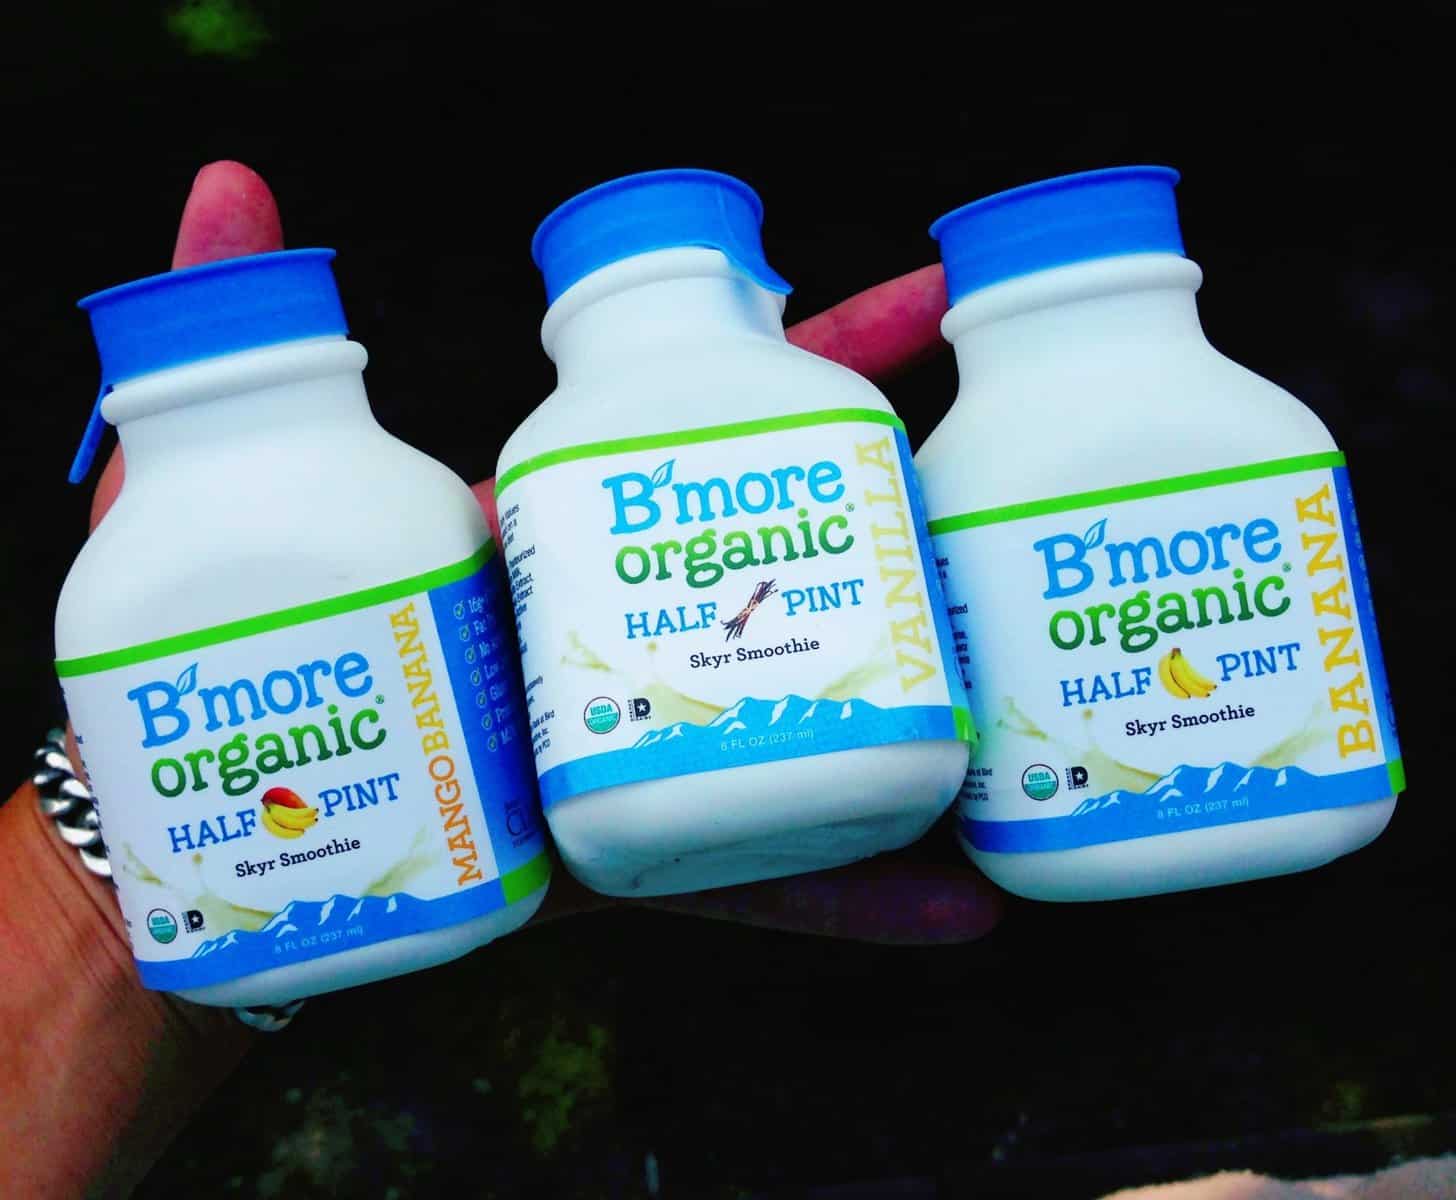 B'more Organic Skyr Cultured Milk Review